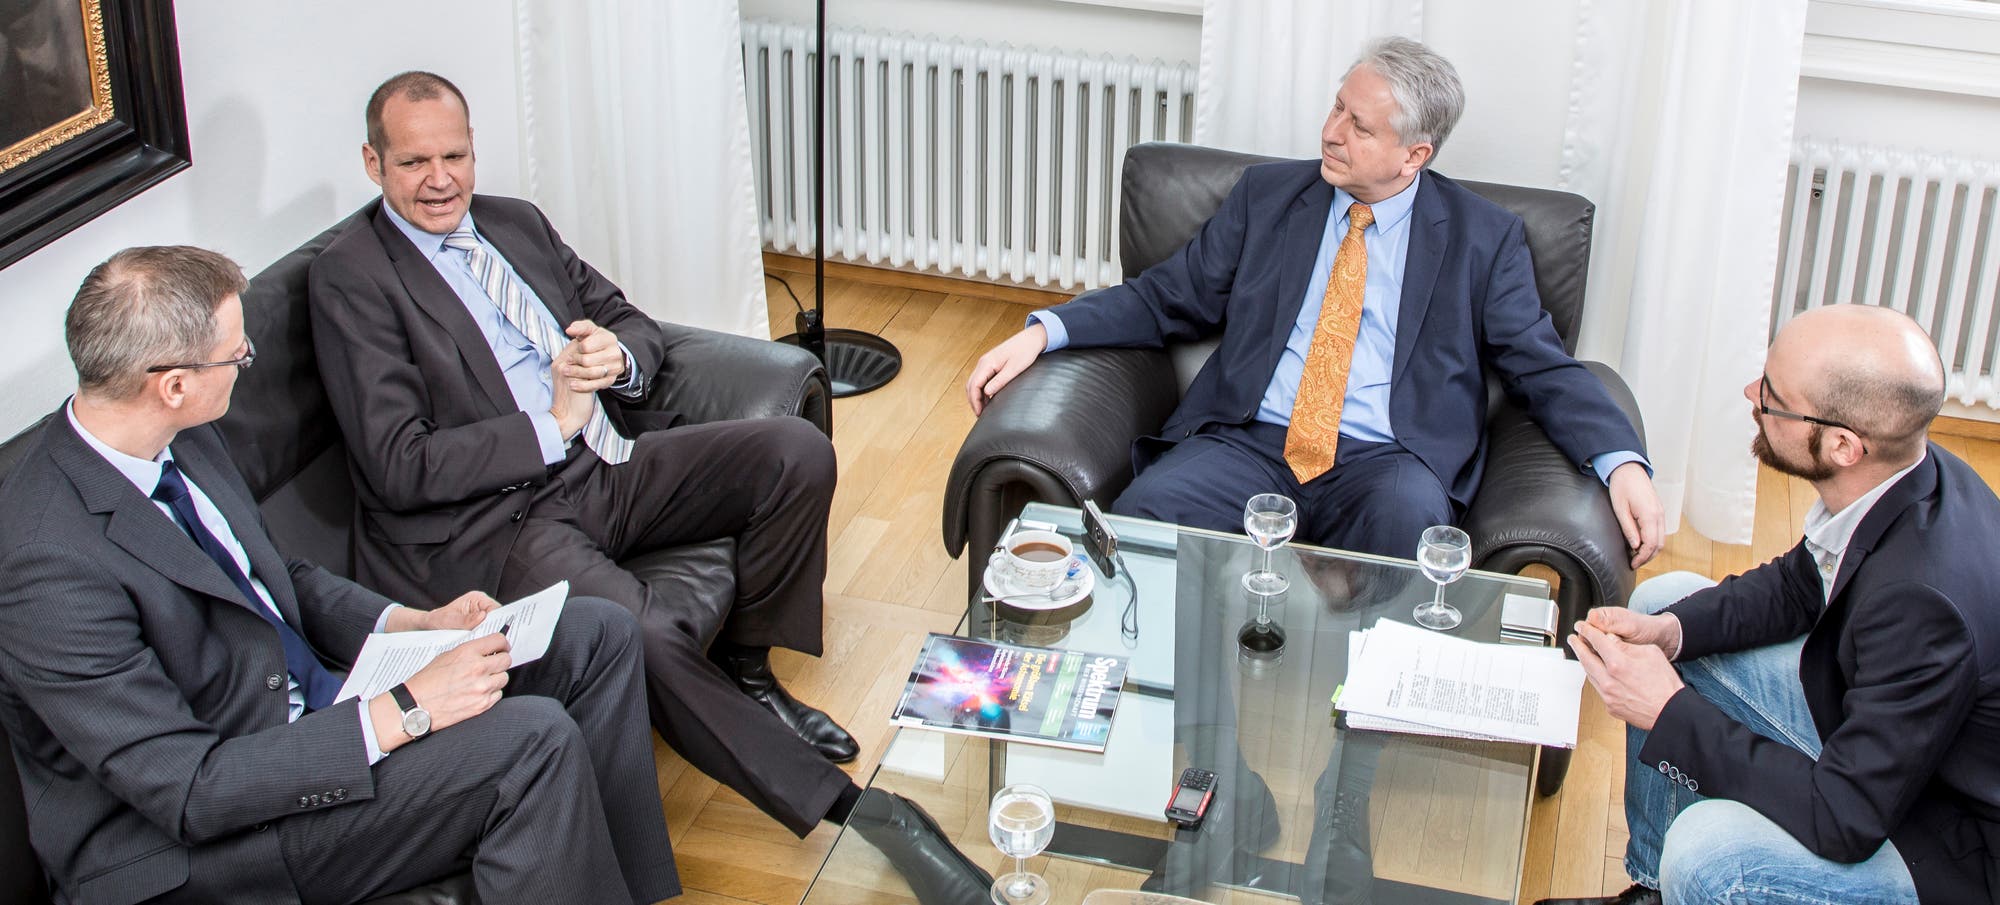 Mit Bernhard Kempen (Mitte links) und Bernhard Eitel (Mitte rechts) diskutierten Carsten Könneker (links) und Tim Haarmann (rechts).